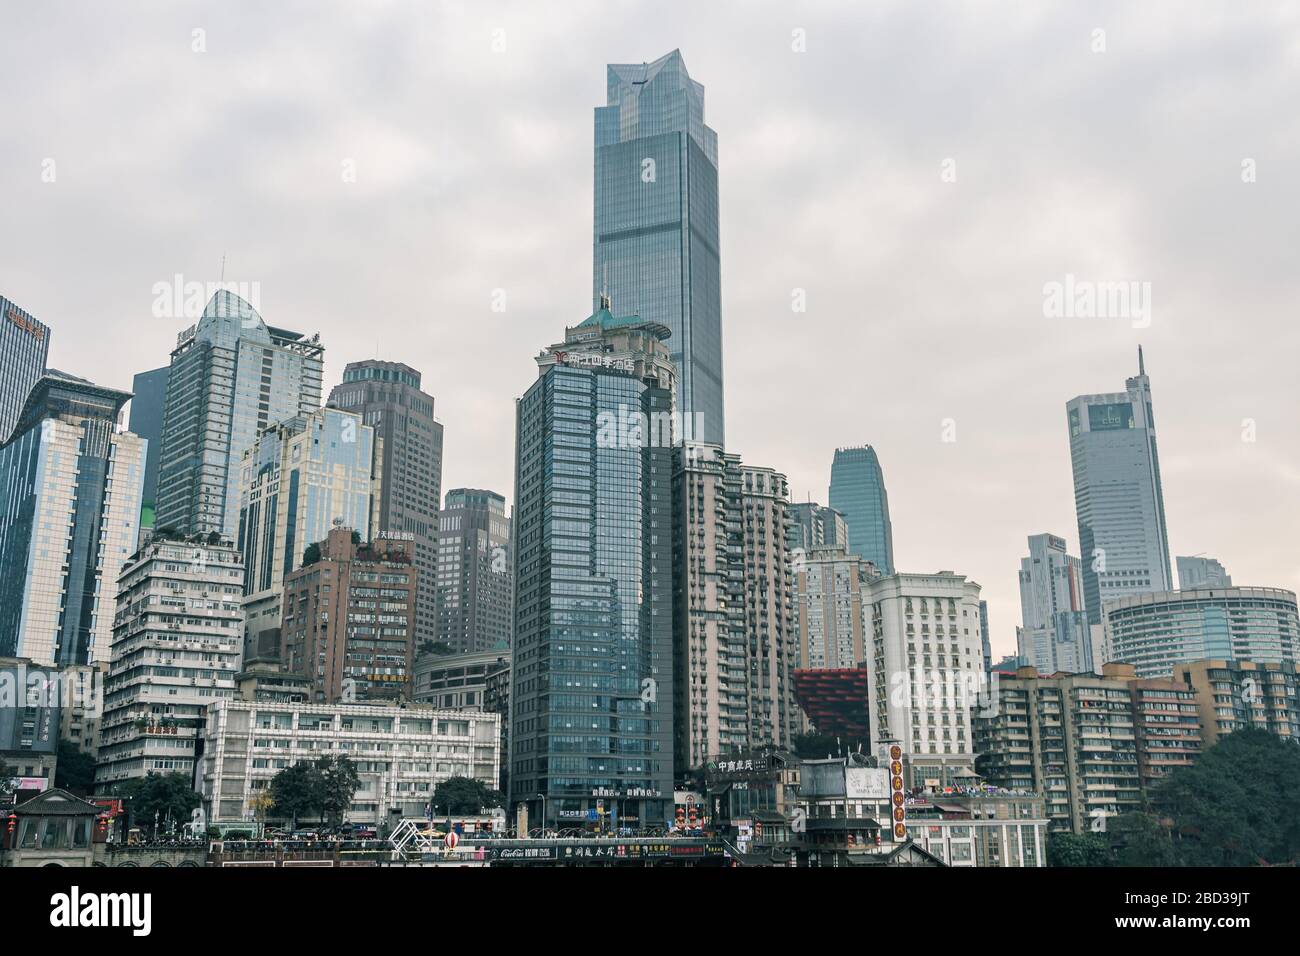 Chongqing, China - Dec 22, 2019: CBD Skyscrapers near Hongya dong cave by Jialing river Stock Photo